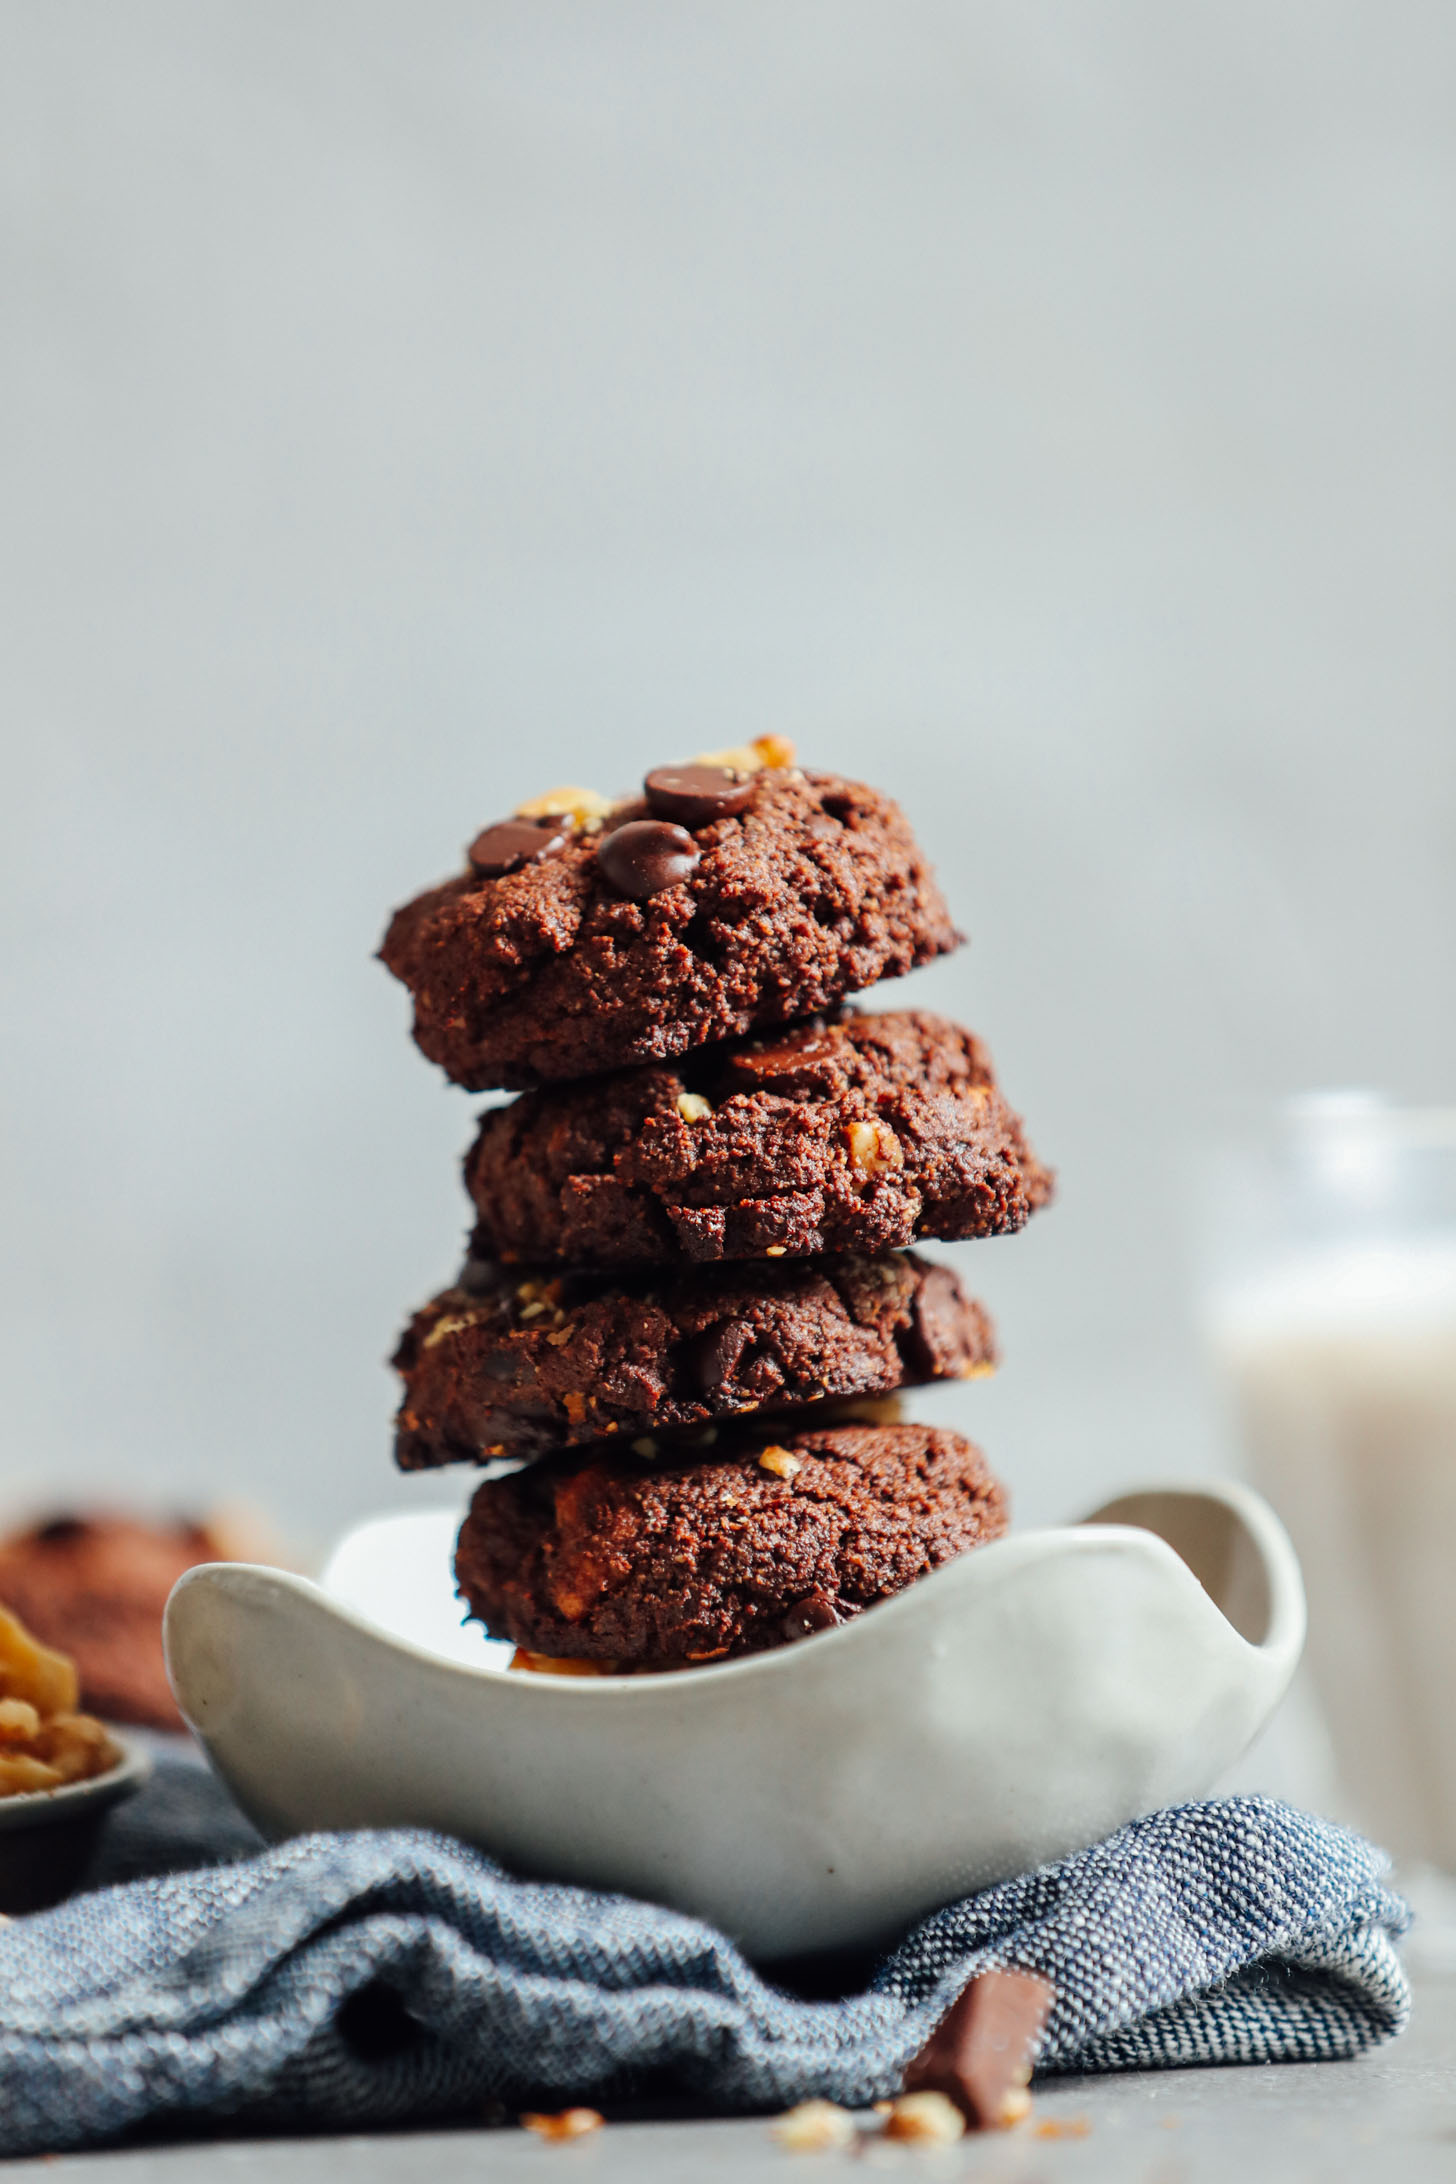 INSANE Vegan Brownie Cookies! 10 ingred, FUDGY, delicious! #vegan #glutenfree #plantbased #brownie #cookies #minimalistbaker